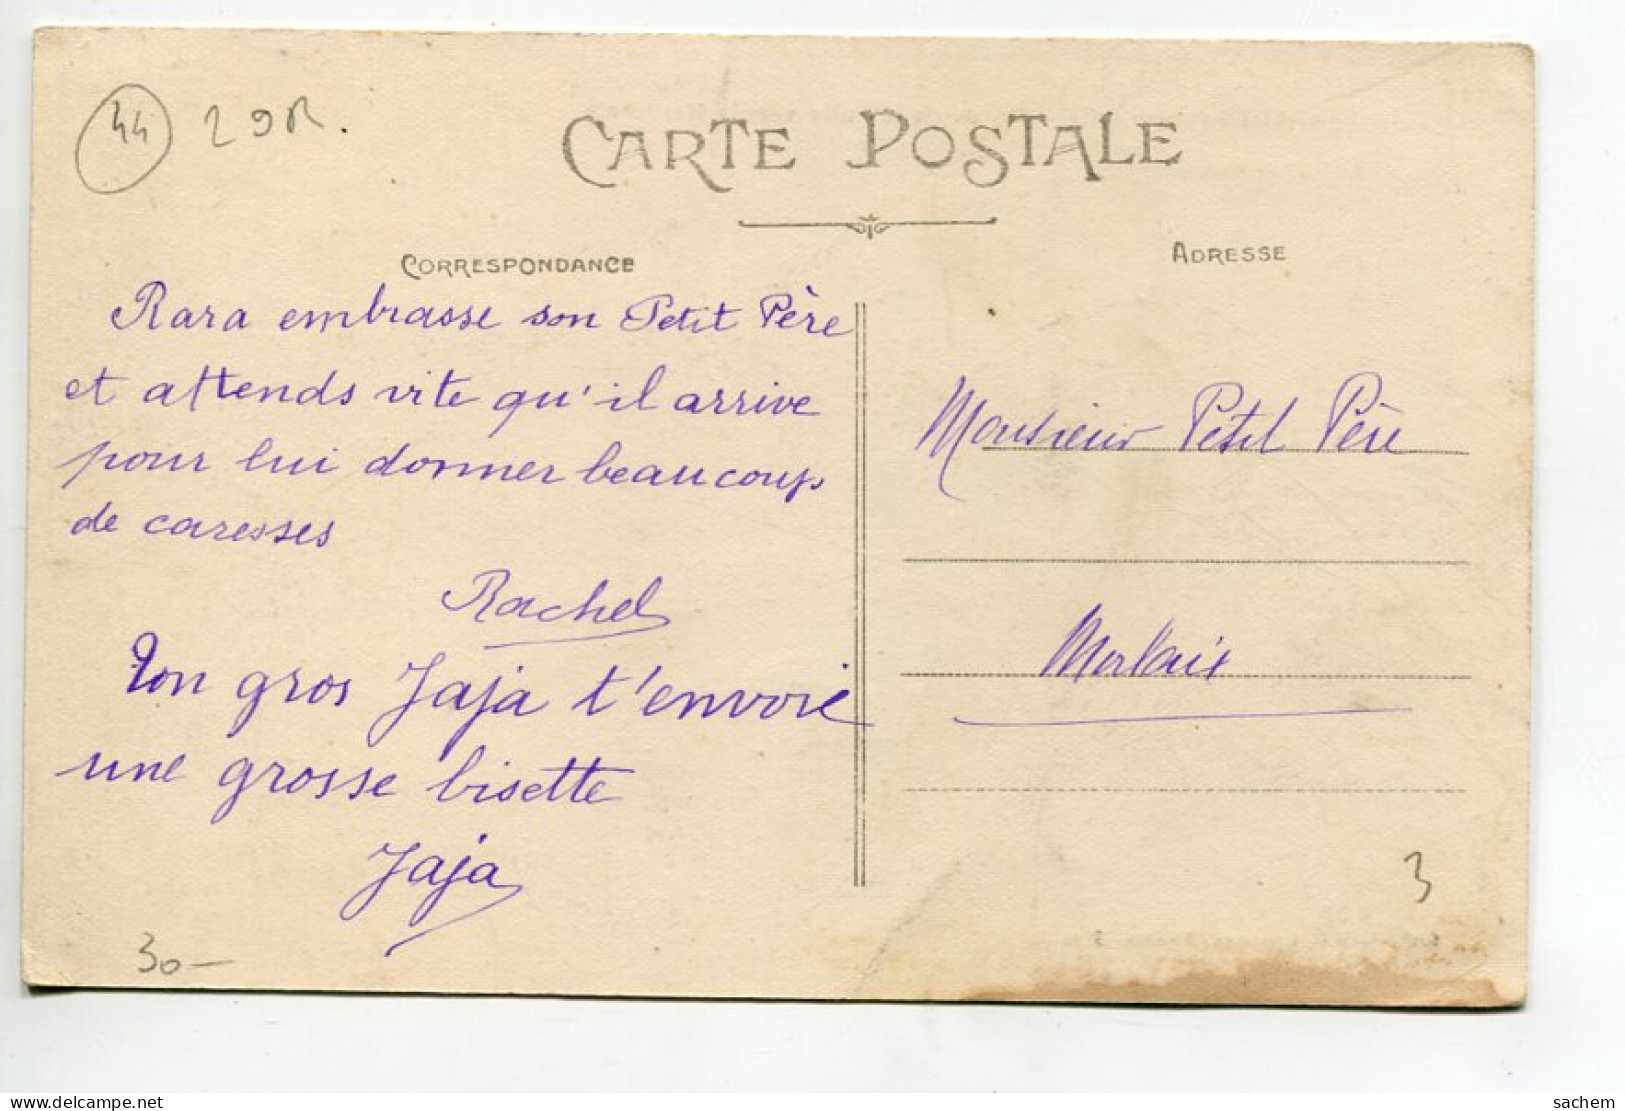 44 VARADES Maisons Bords De La Loire Vers La Meilleraie écrite Vers 1910  D15 2022 - Varades